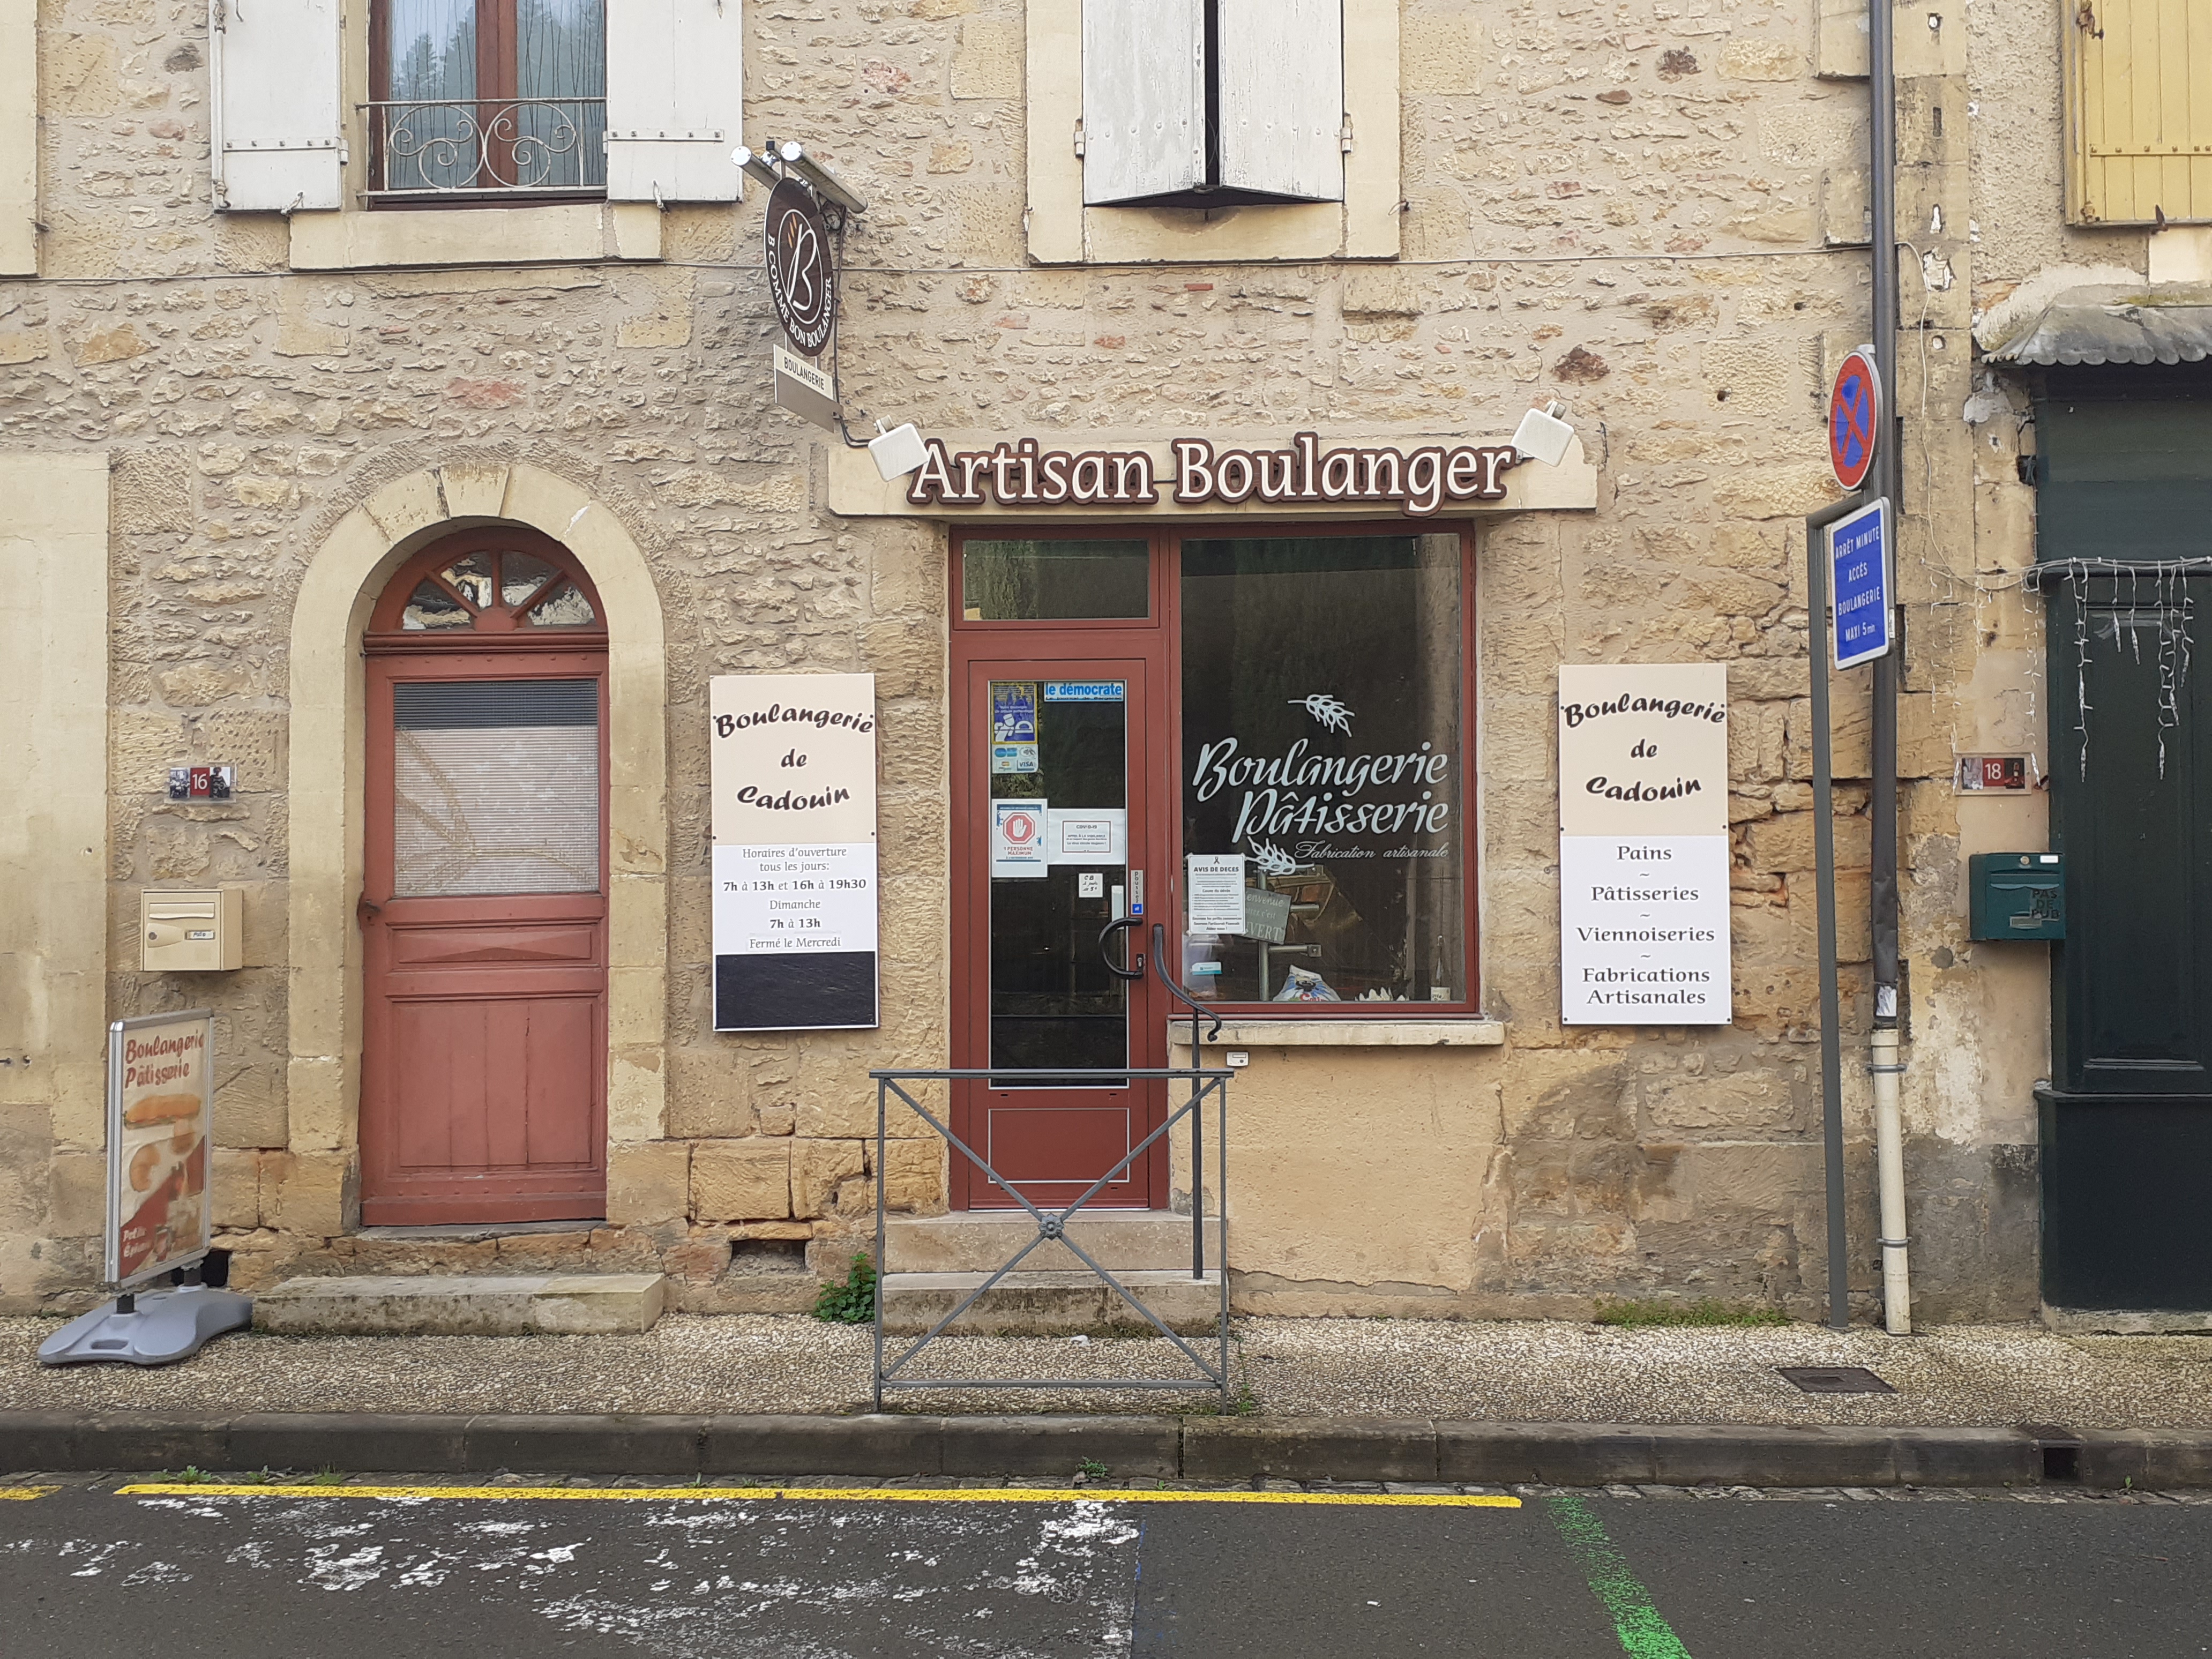 À vendre boulangerie-pâtisserie-petite épicerie, dans village très touristique. local de 100 m².Logement de 140 m² au-dessus de la boulangerie. Possibilité de vendre les murs 180 000€